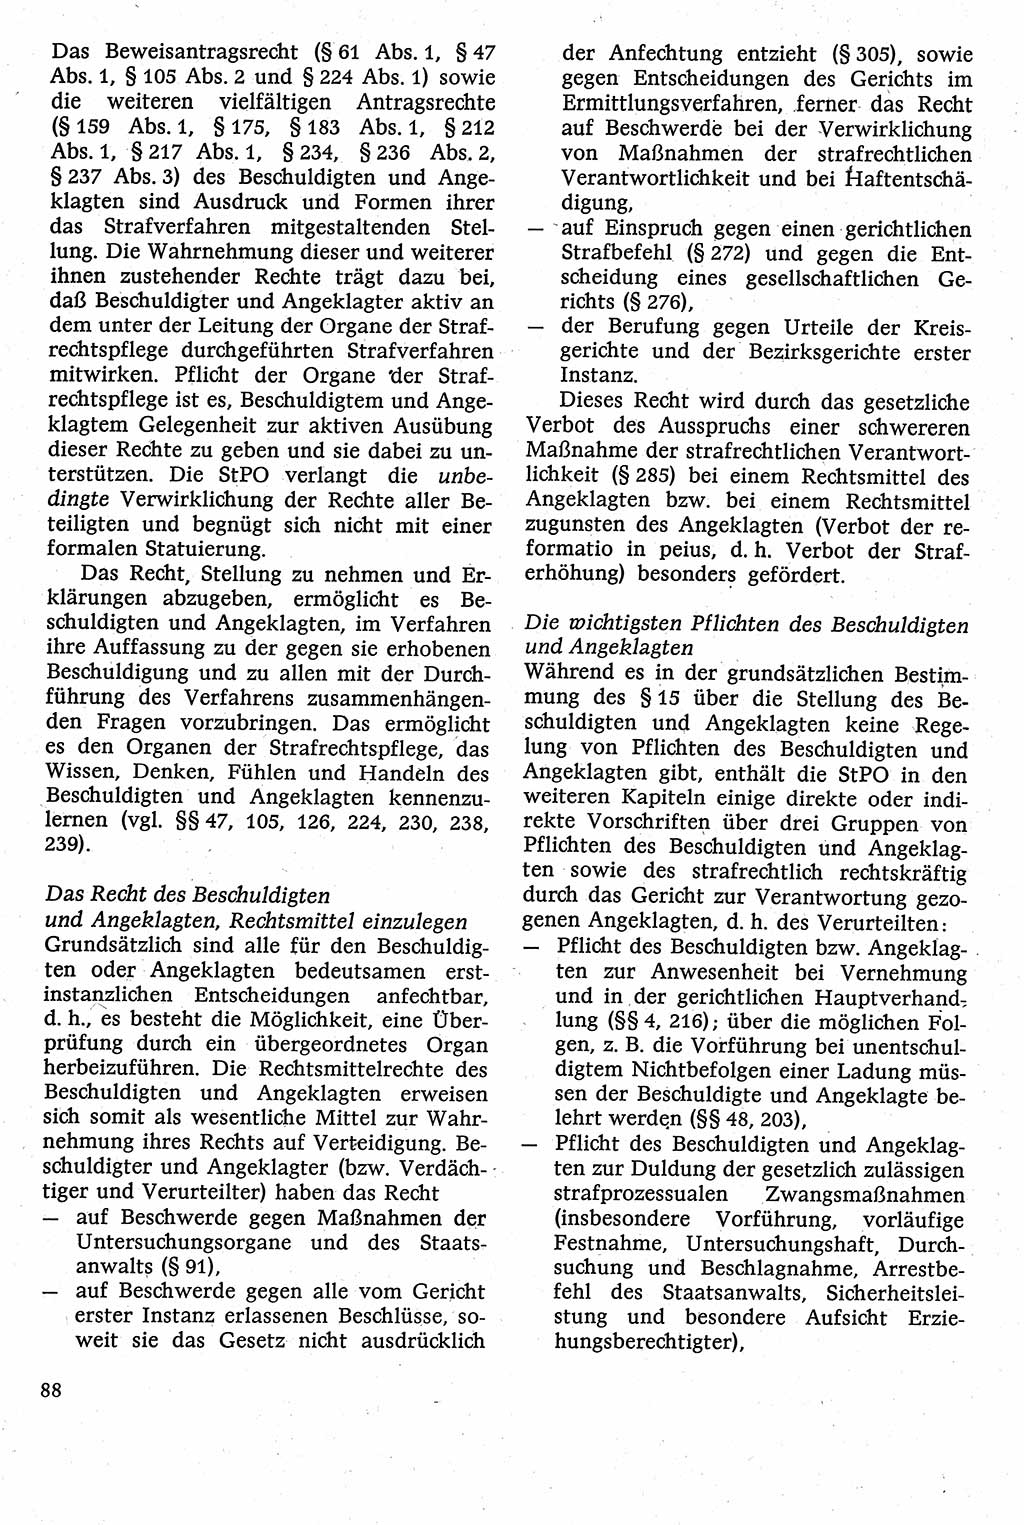 Strafverfahrensrecht [Deutsche Demokratische Republik (DDR)], Lehrbuch 1982, Seite 88 (Strafverf.-R. DDR Lb. 1982, S. 88)